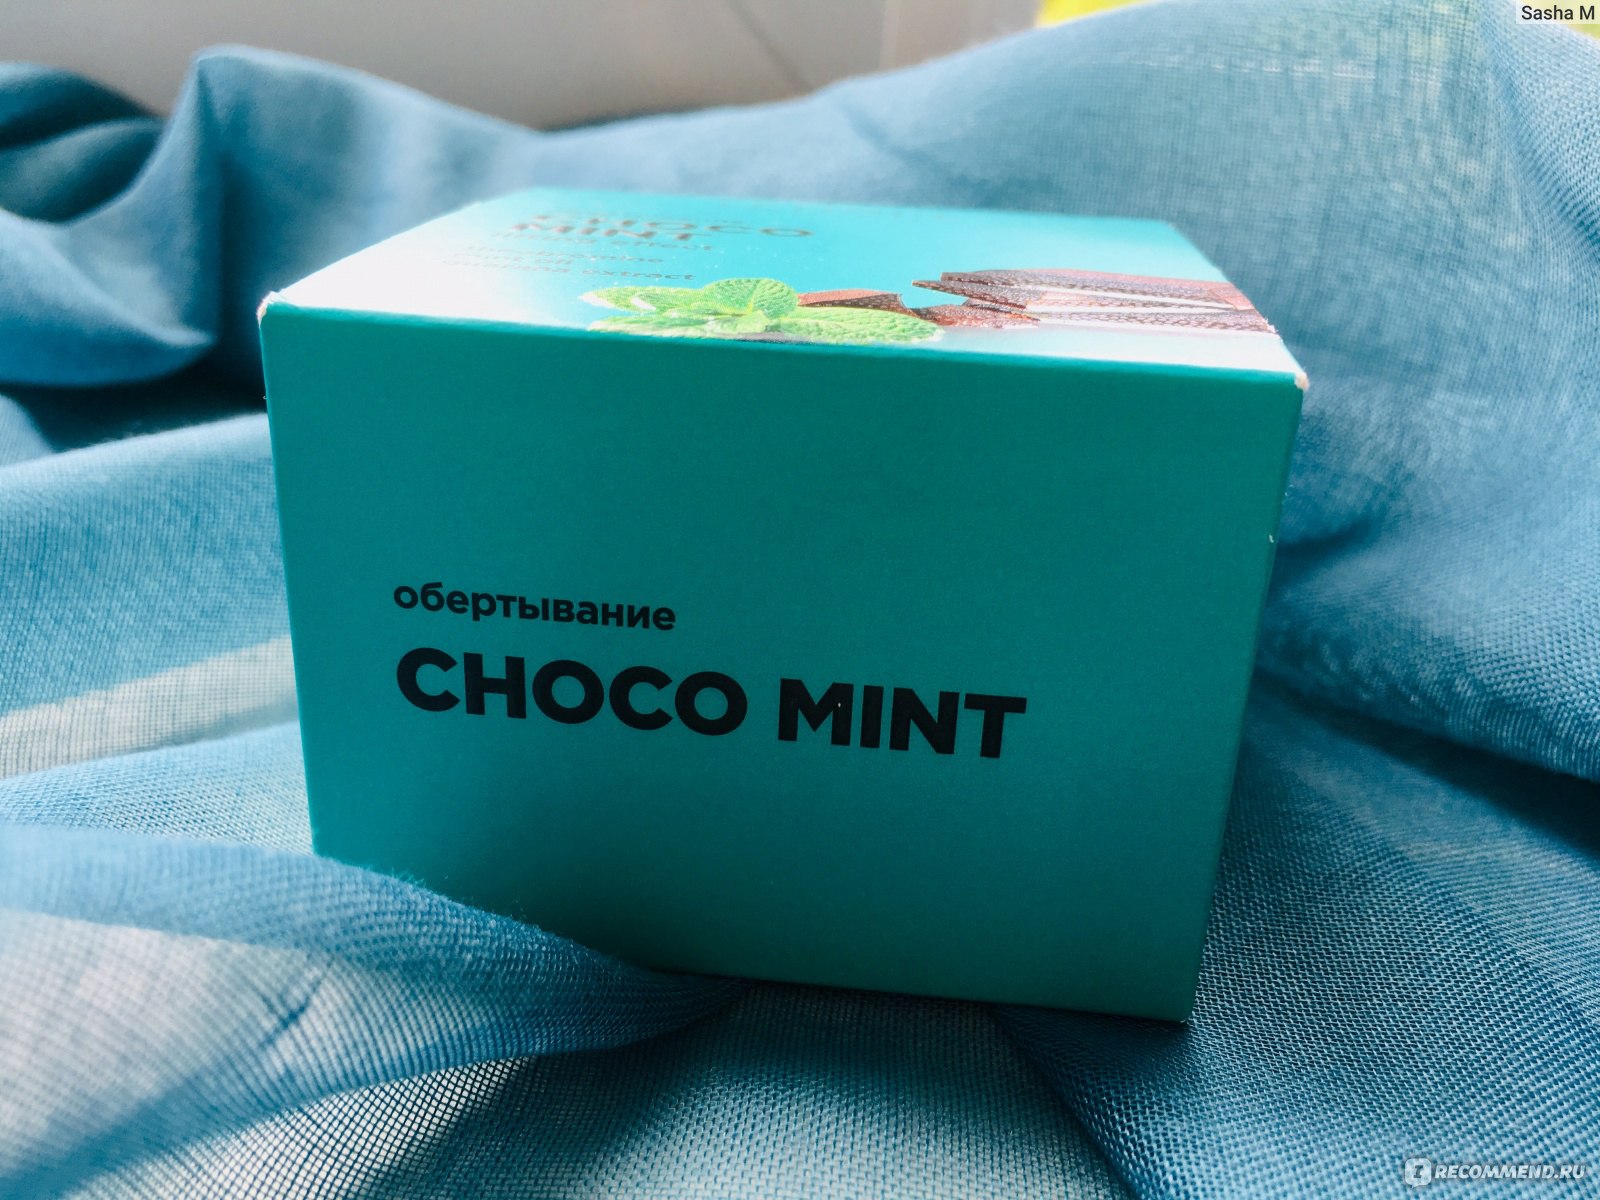 Обертывание Choco mint от Letique отзывы